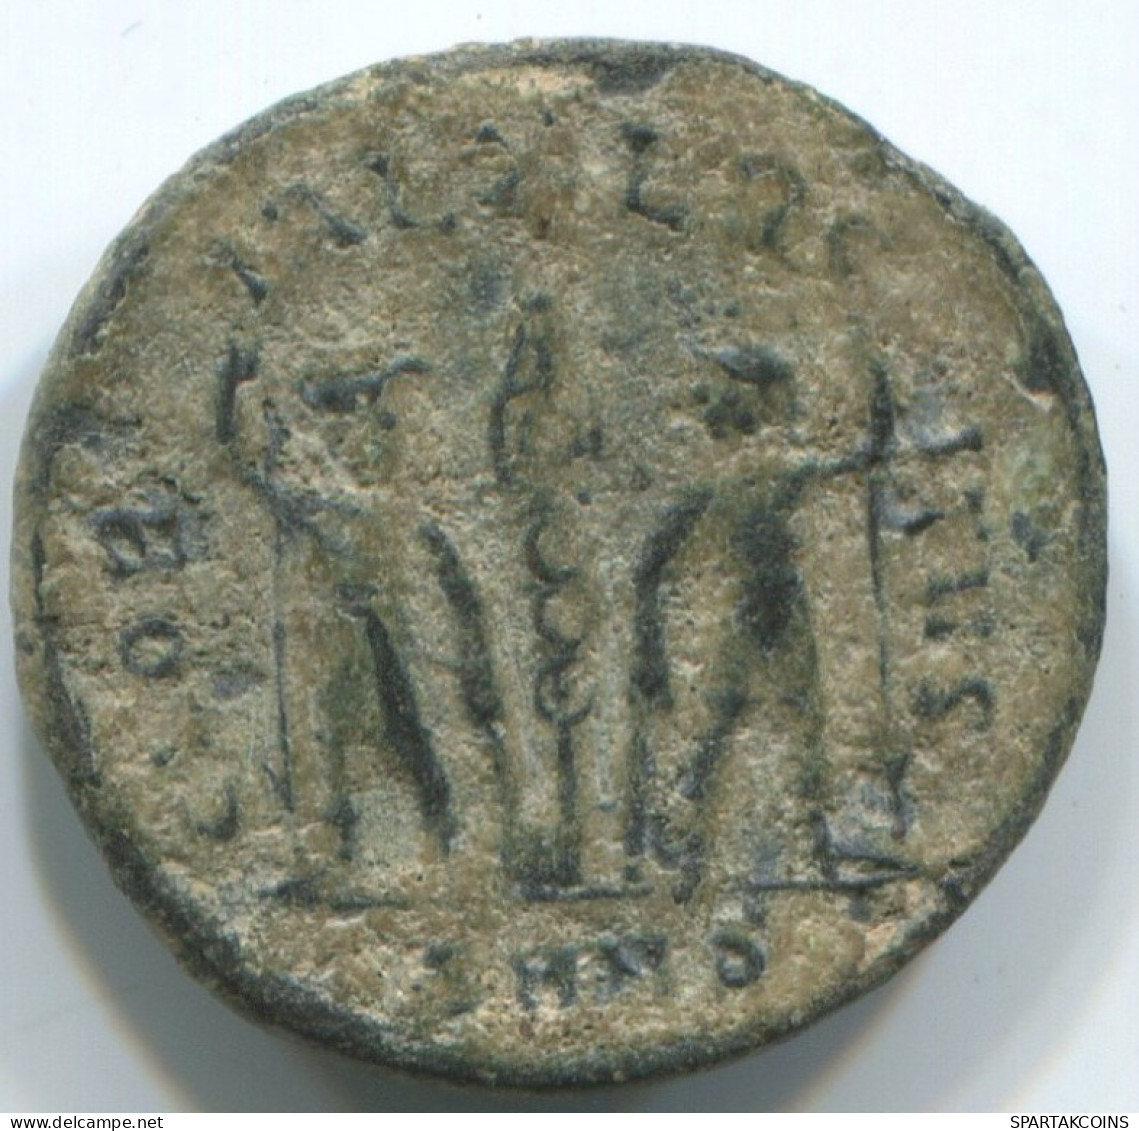 LATE ROMAN EMPIRE Coin Ancient Authentic Roman Coin 1.6g/17mm #ANT2421.14.U.A - Der Spätrömanischen Reich (363 / 476)